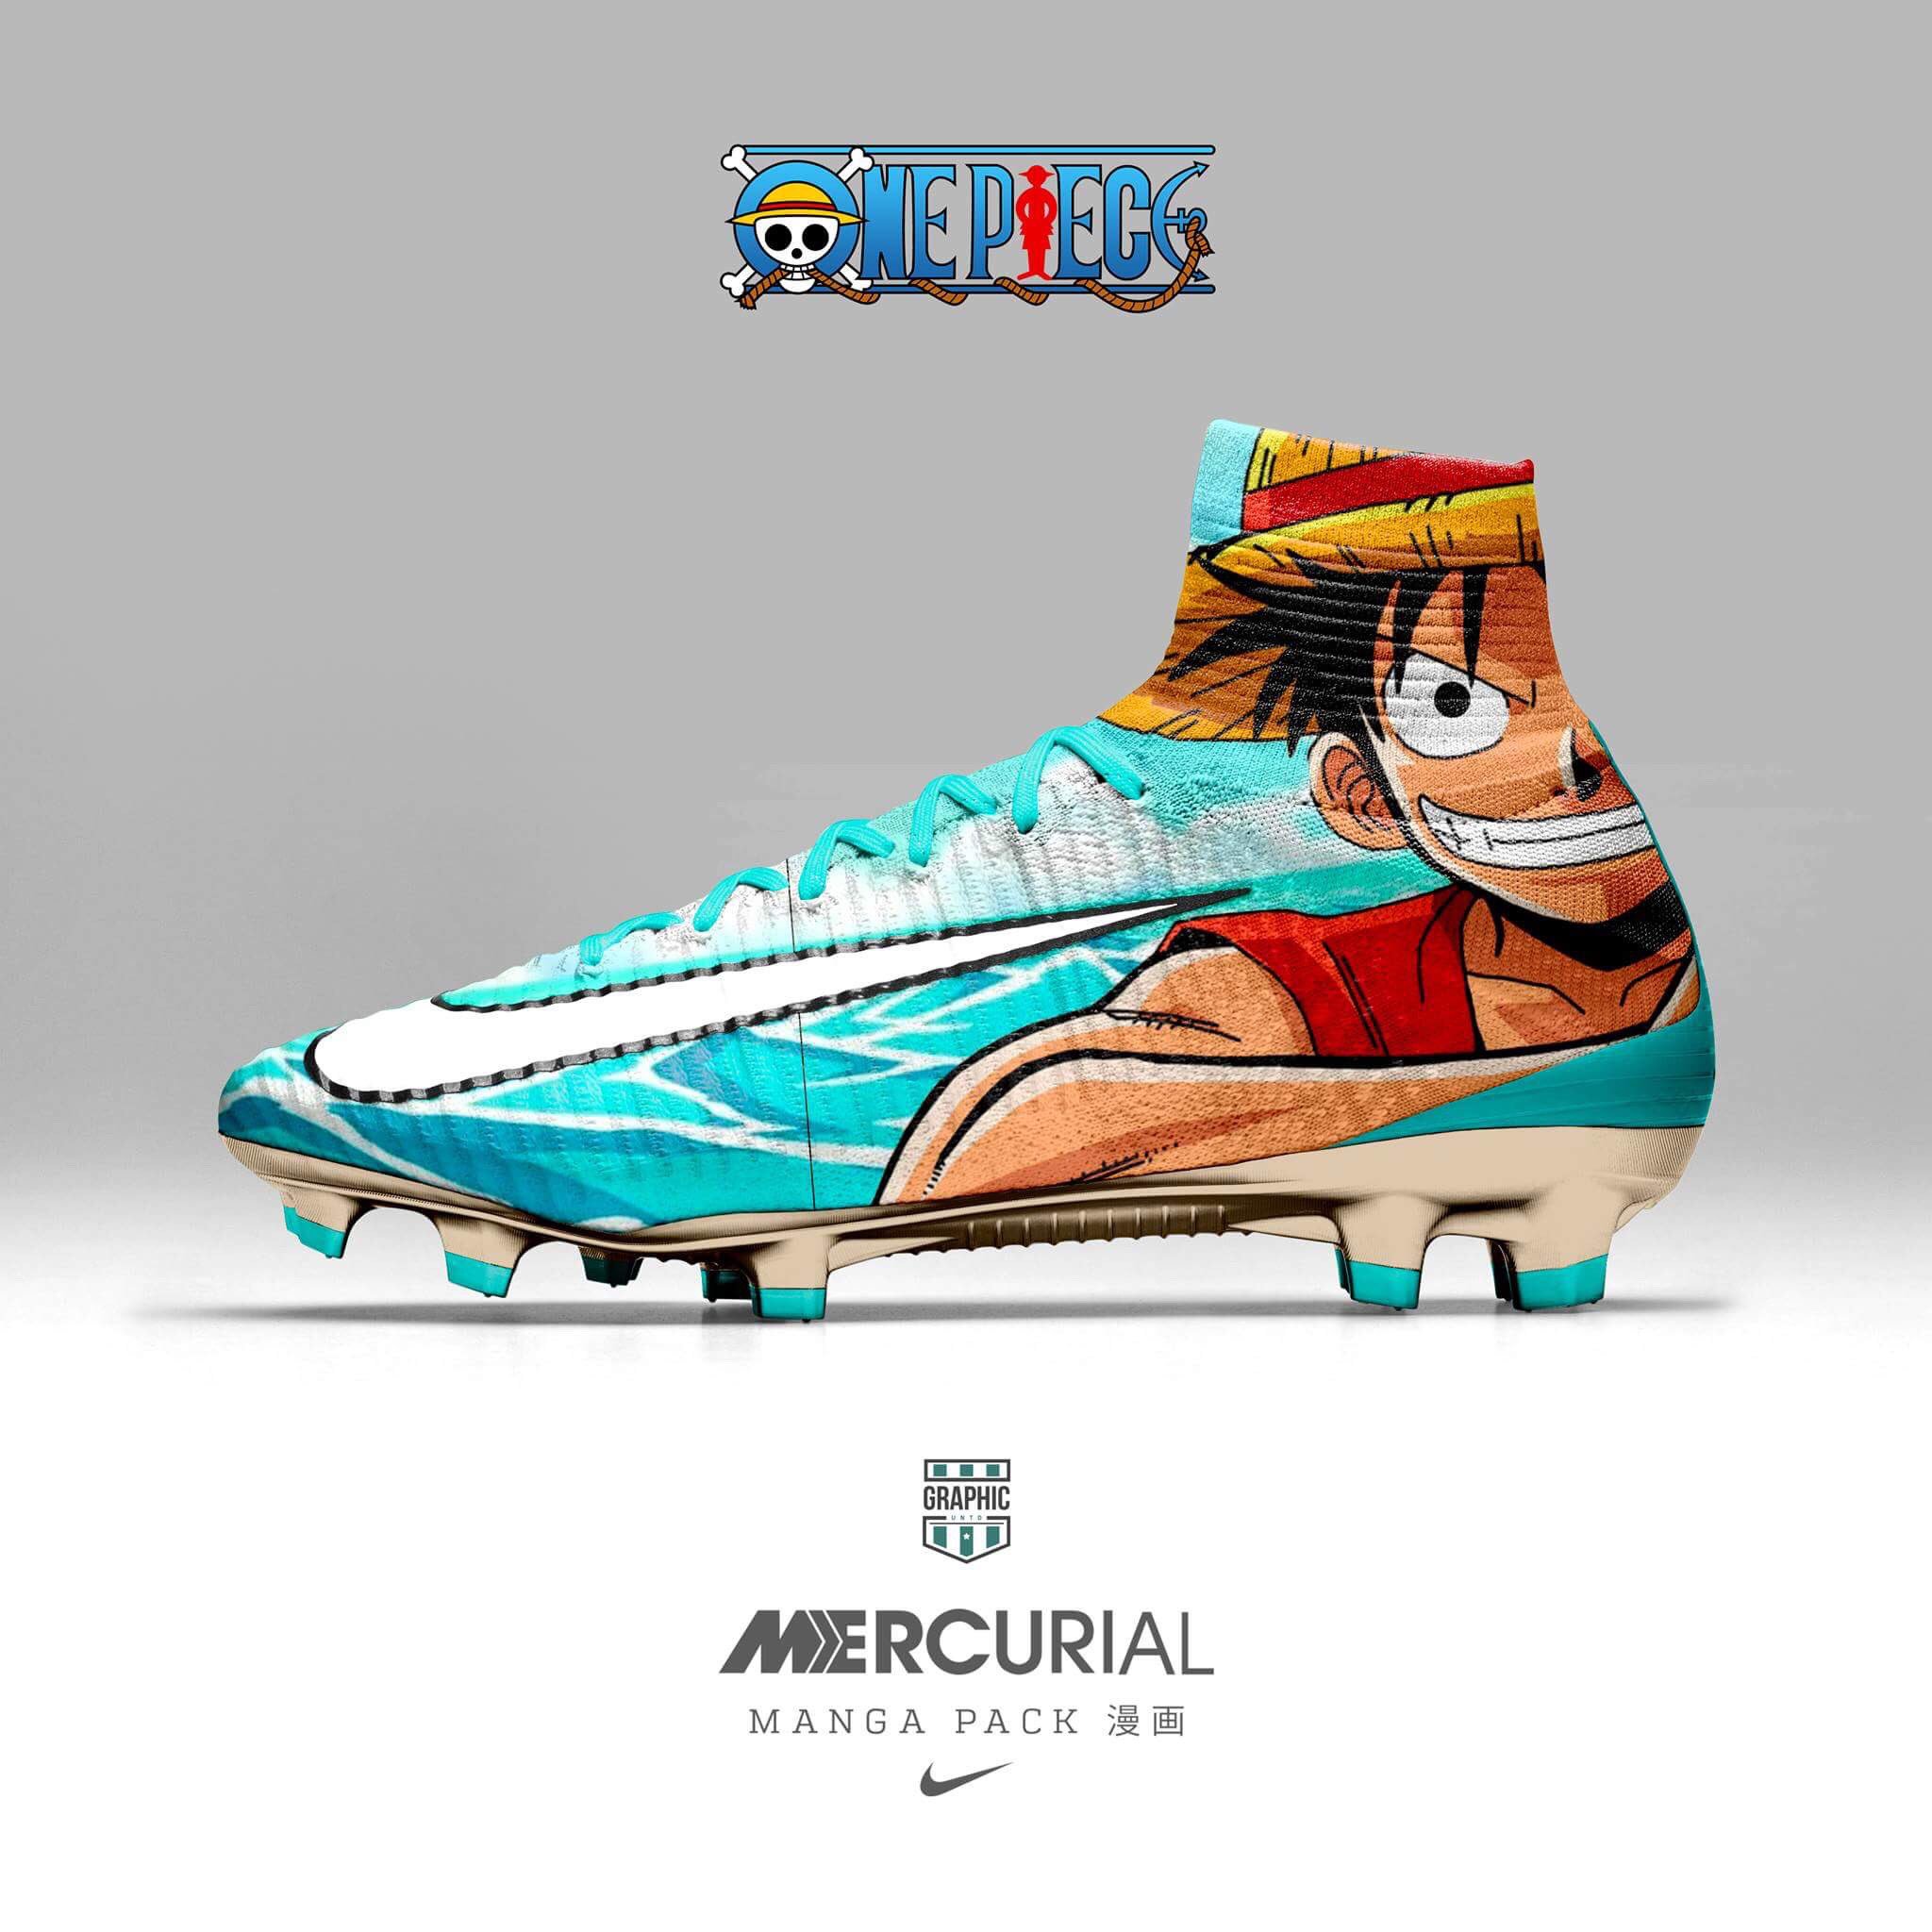 Nuevos botines Nike Mercurial motivos dibujos animados. | Diario Deportivo